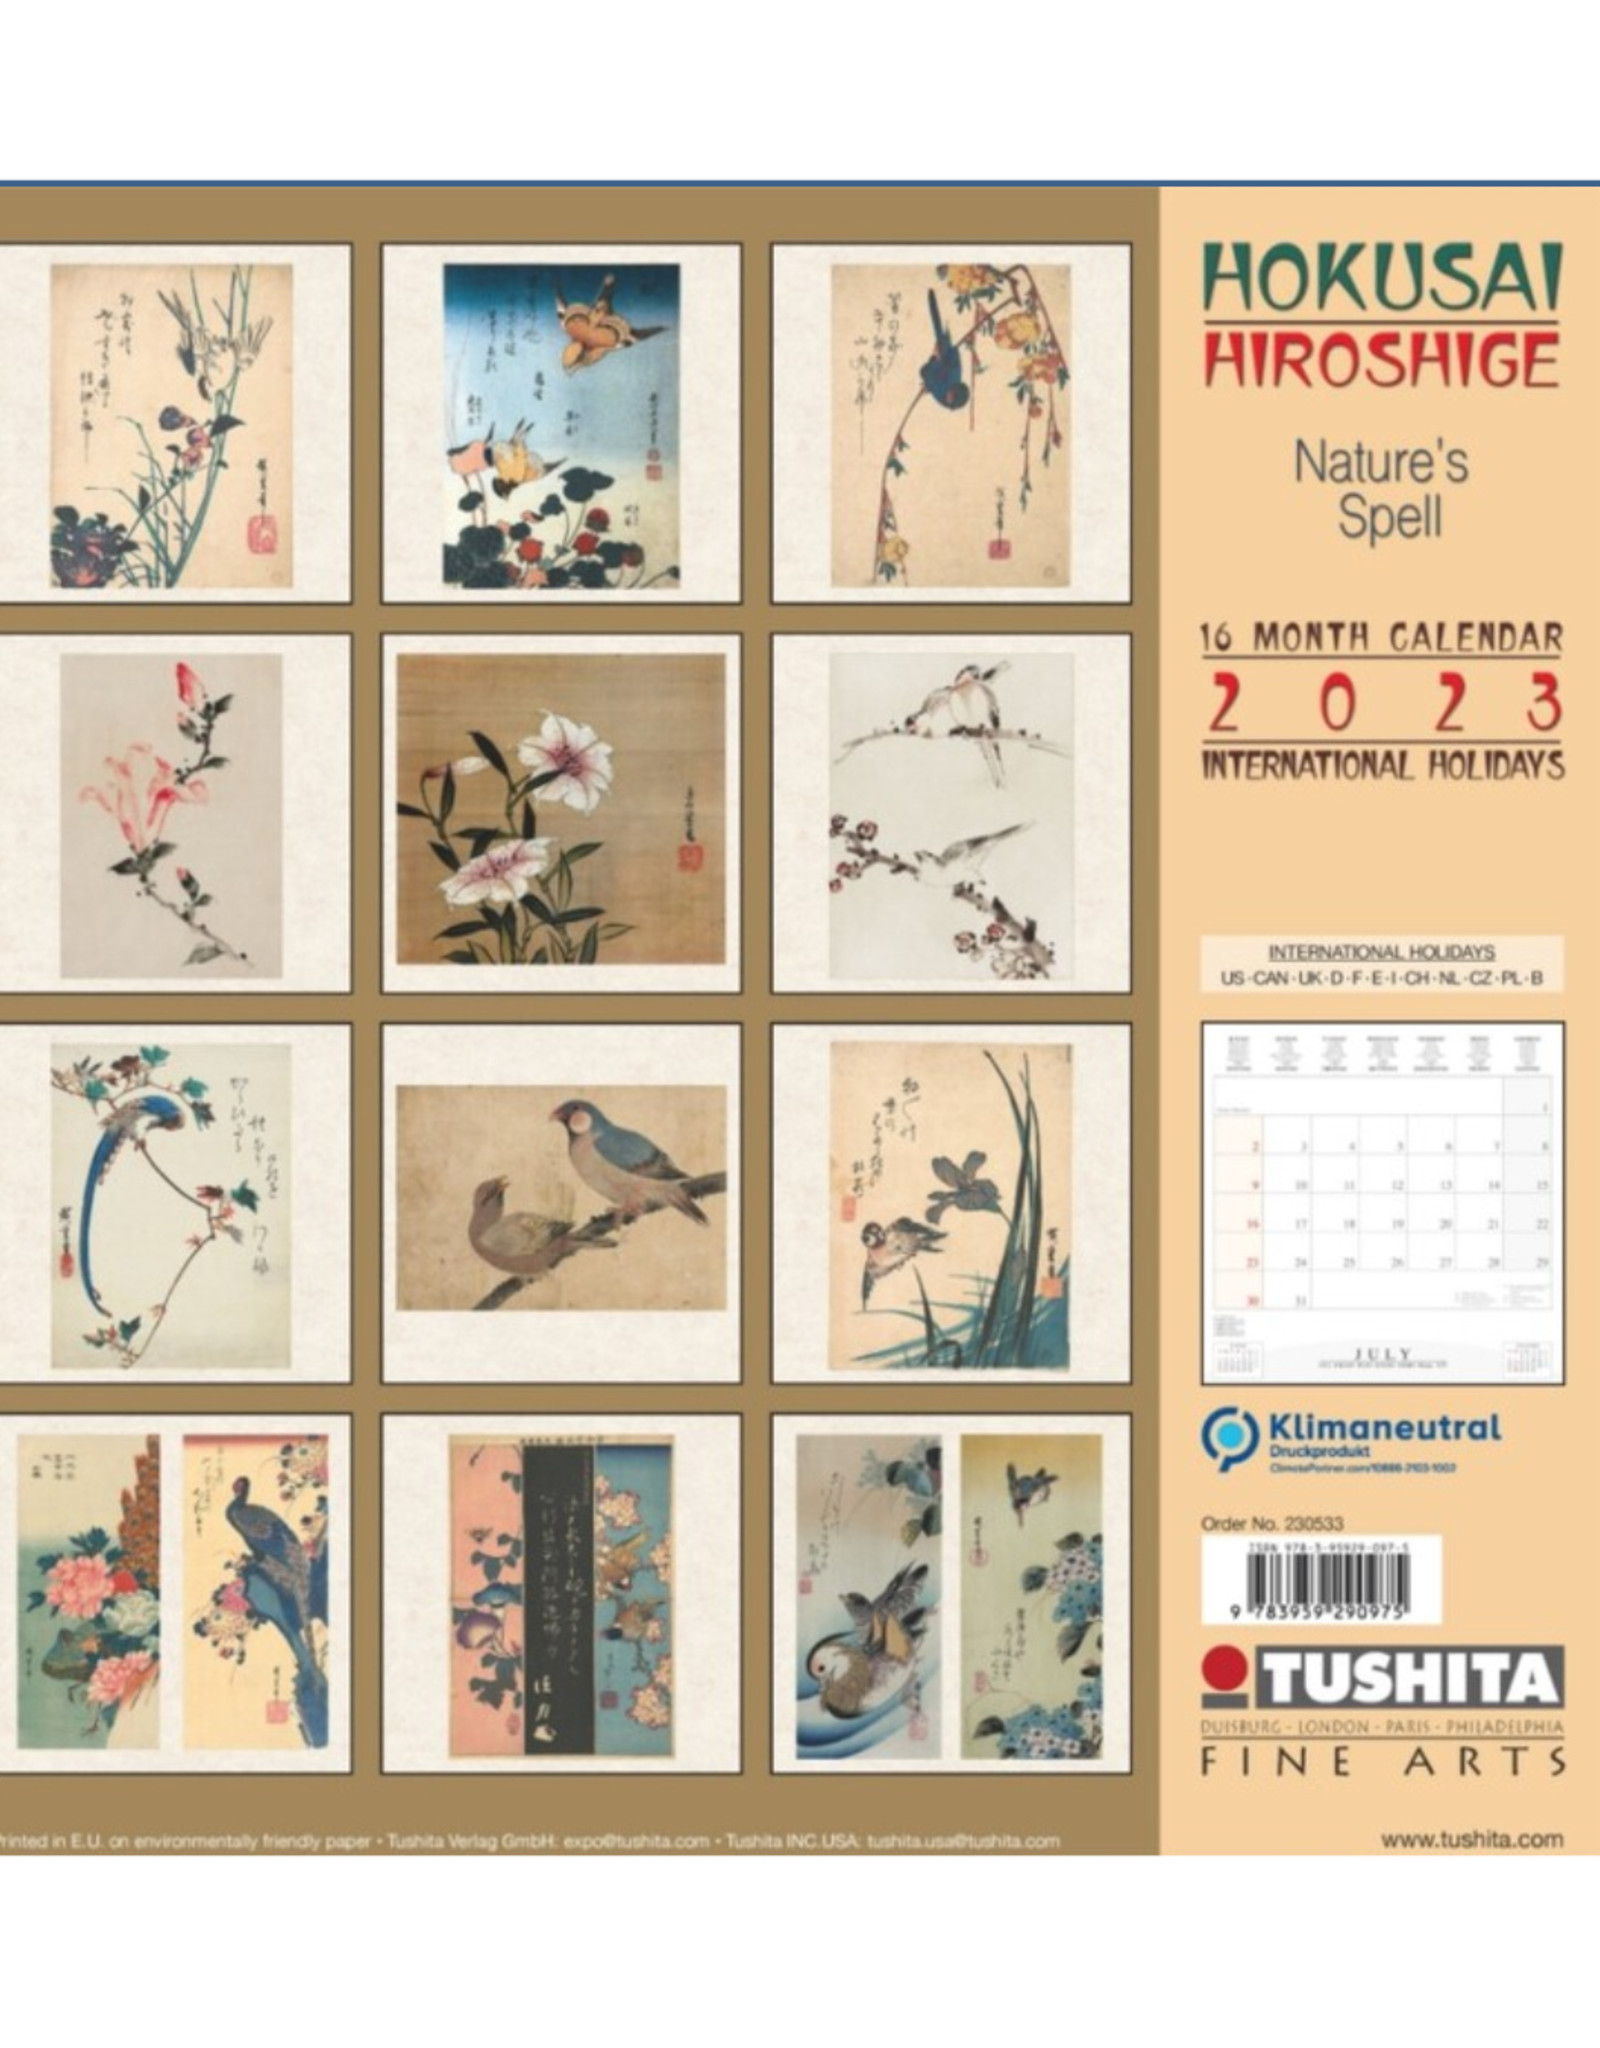 Hokusai Hiroshige Nature's Spell 2023 Calendar